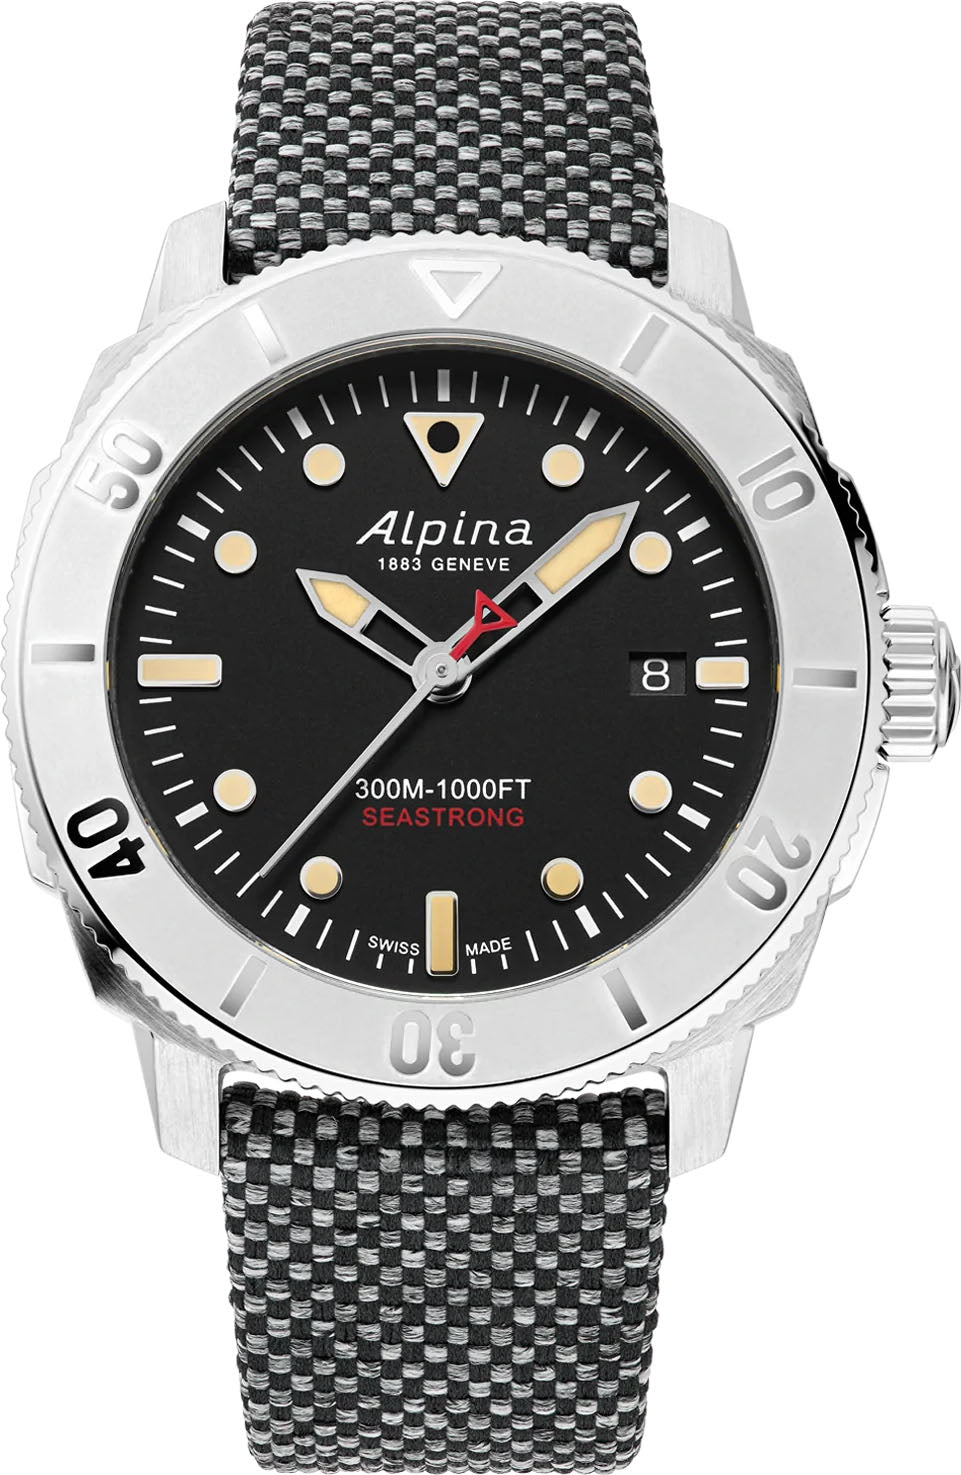 Photos - Wrist Watch Alpina Watch Seastrong Diver 300 Automatic Calanda - Black ALP-369 